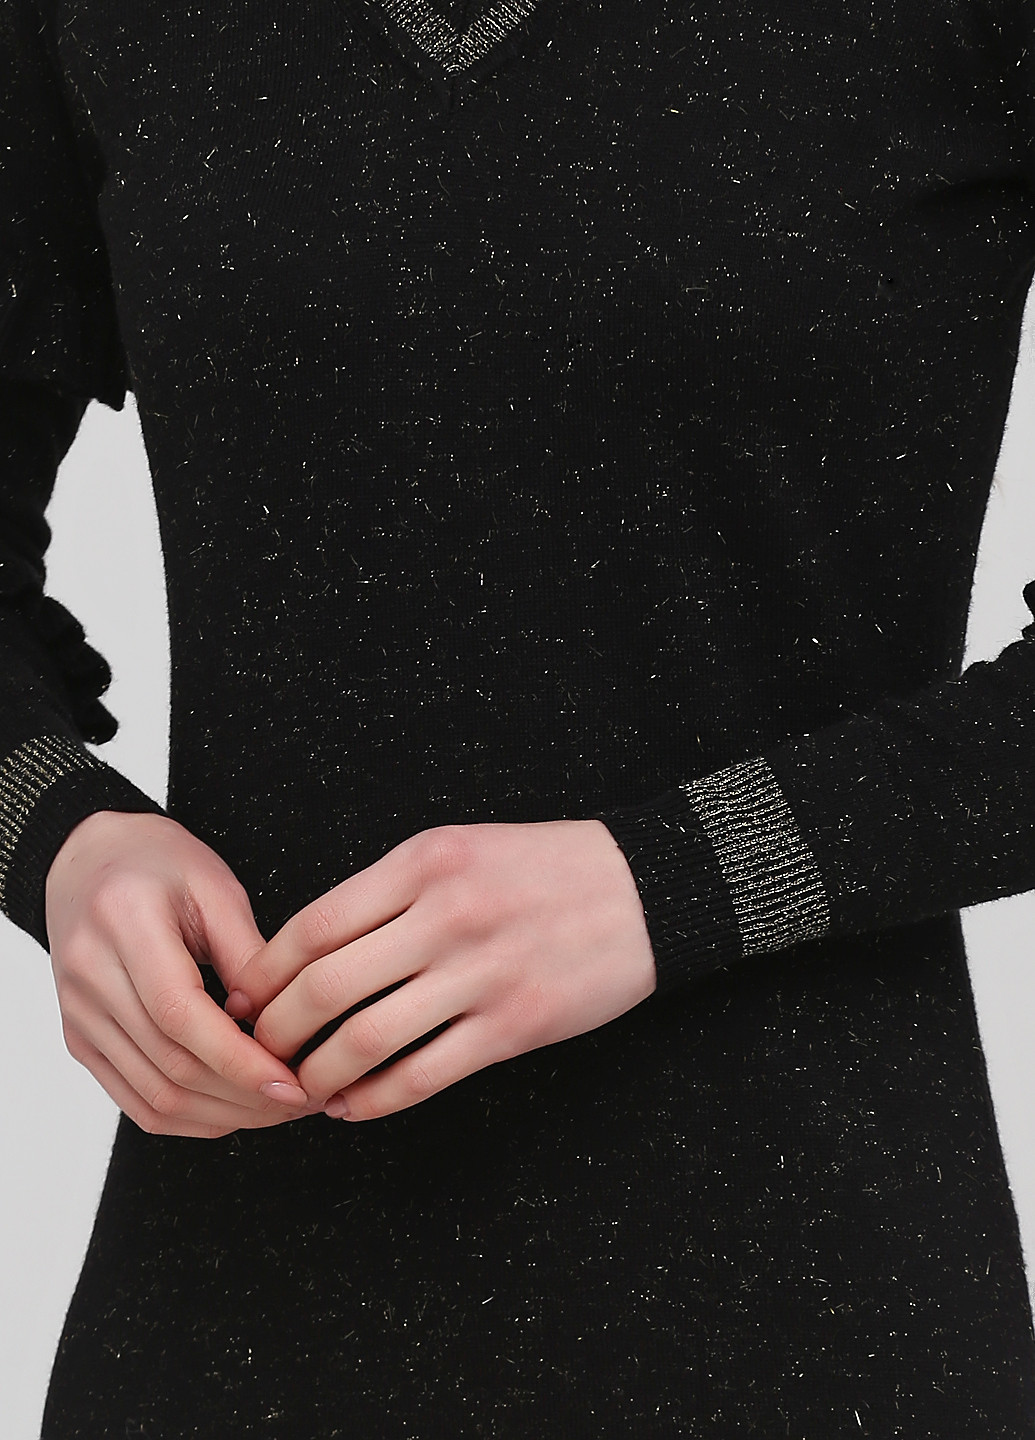 Черное кэжуал платье платье-свитер Biba меланжевое